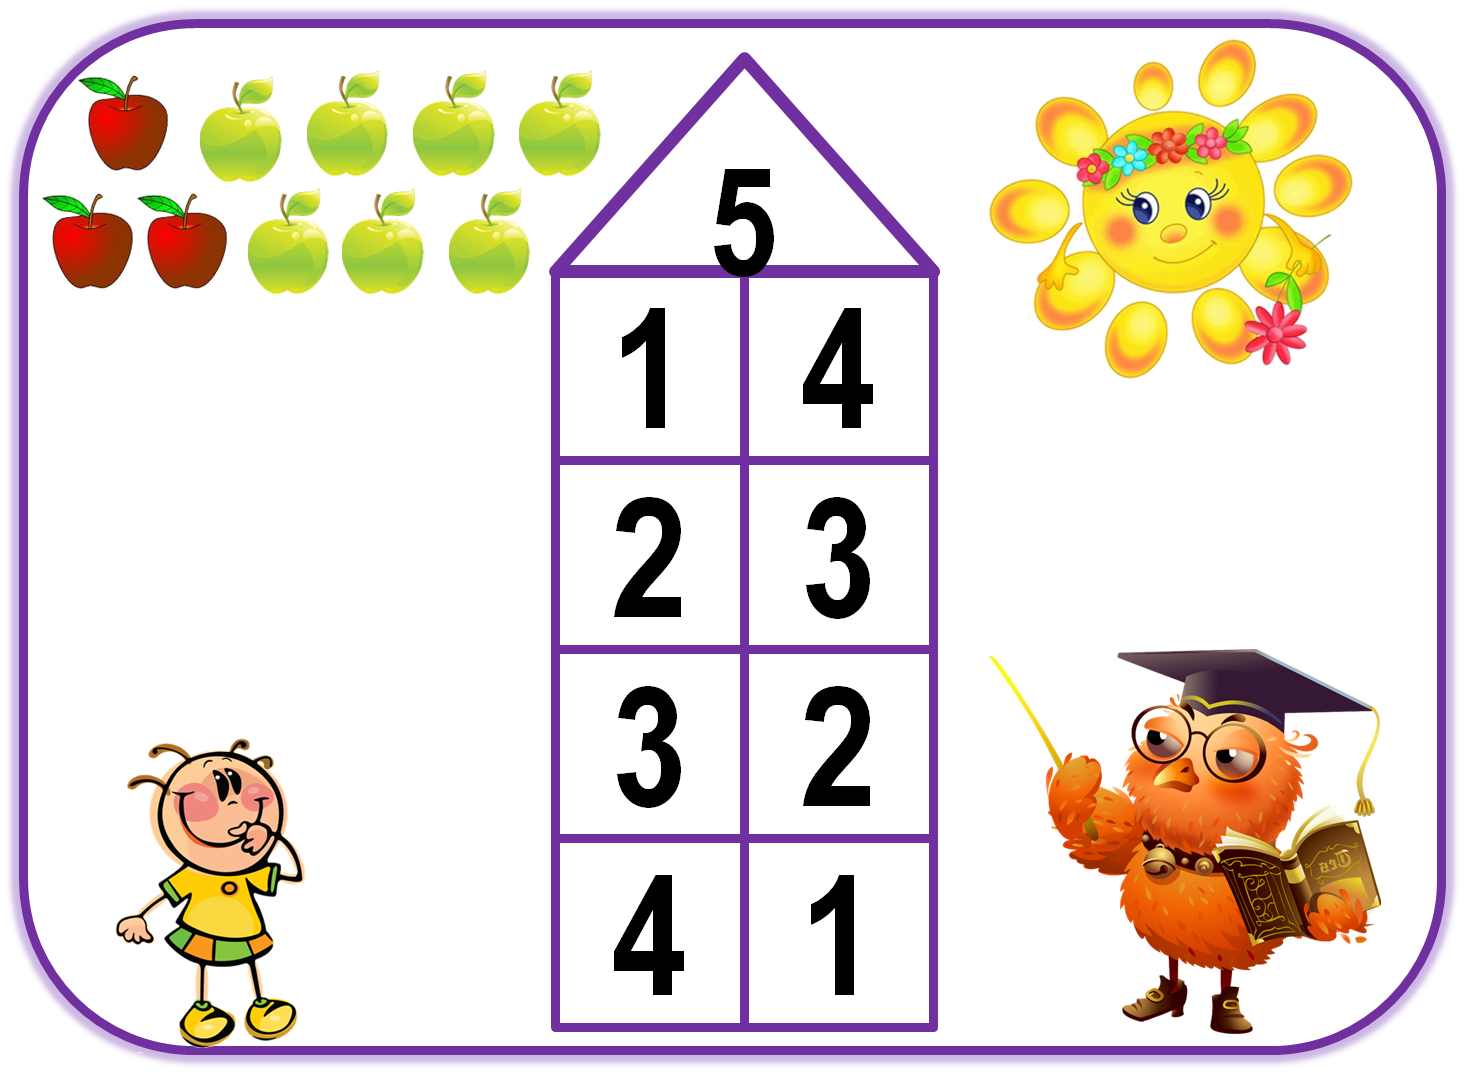 И т д 5 получить. Цифры состава числа от 1 до 5. Числовые домики для дошкольников число 5. Числовые домики для дошкольников задания до 5. Число 5 состав числа для дошкольников.